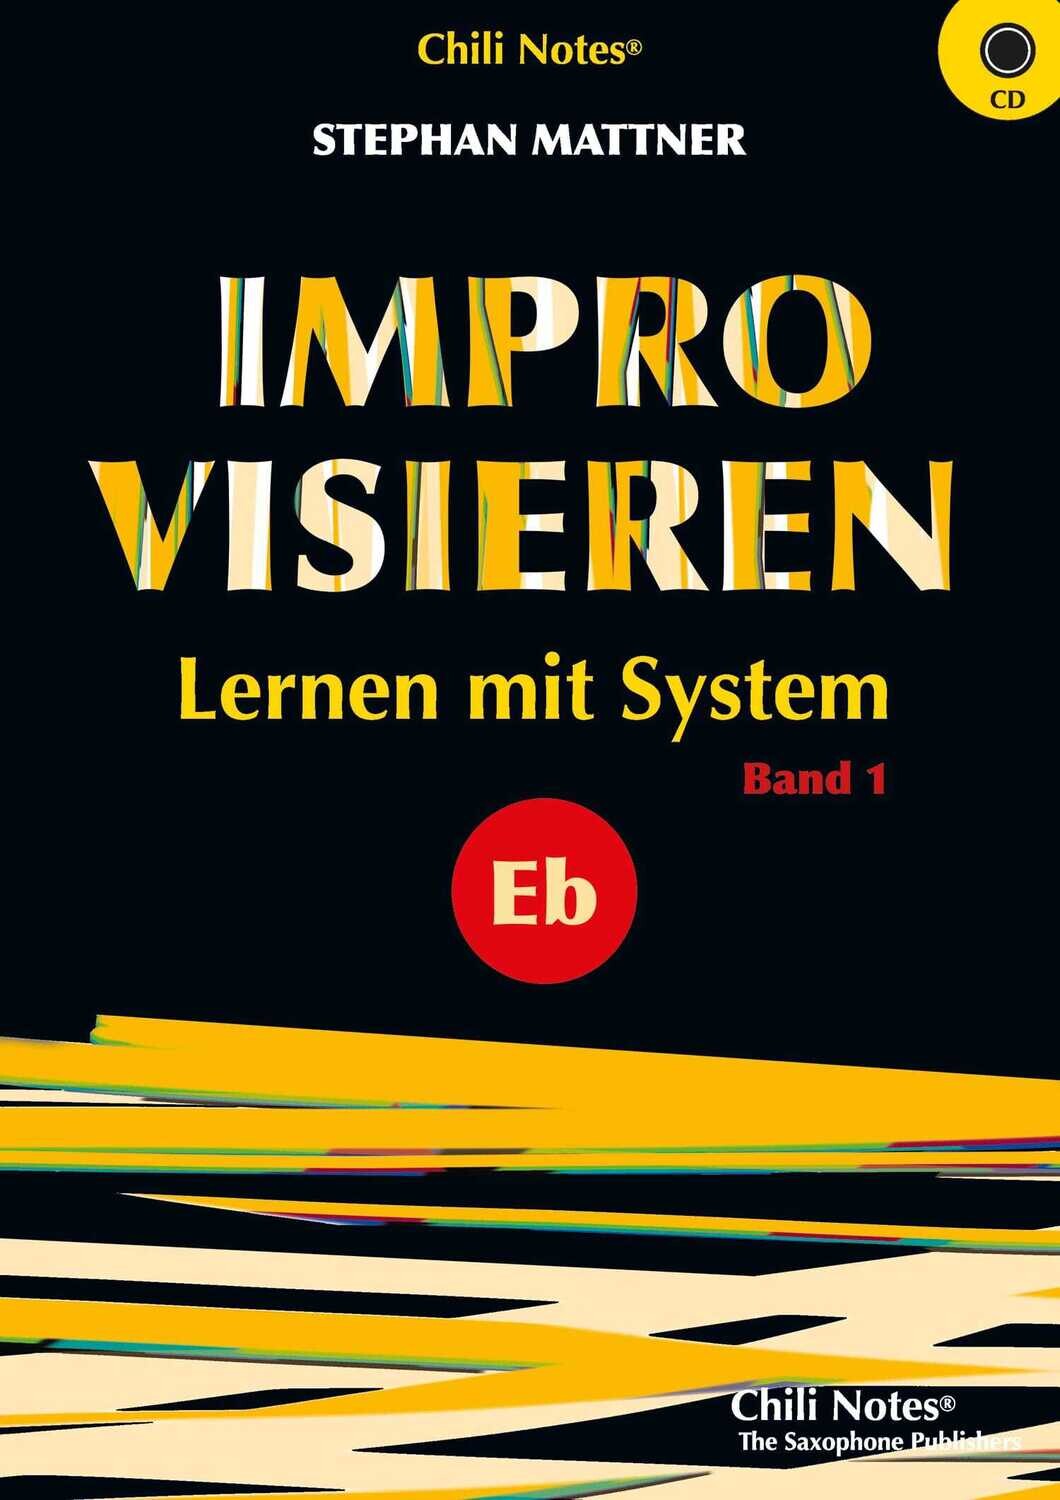 Improvisieren - Lernen mit System Band 1 für Eb-Instrumente